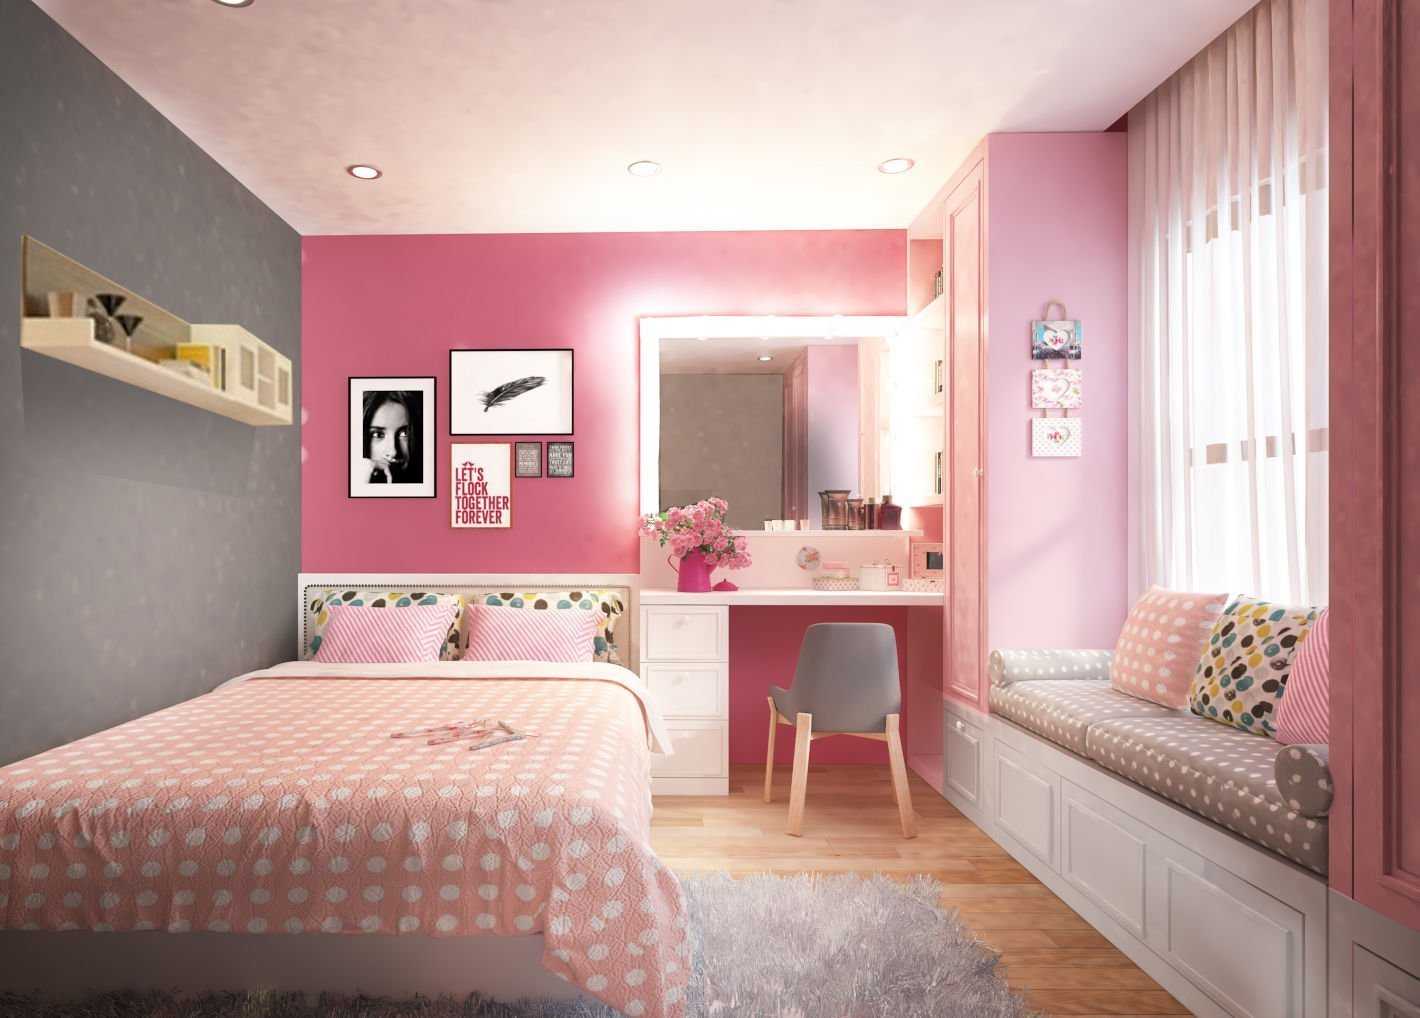 Gợi ý 10 mẫu trang trí phòng ngủ bằng đồ handmade đẹp